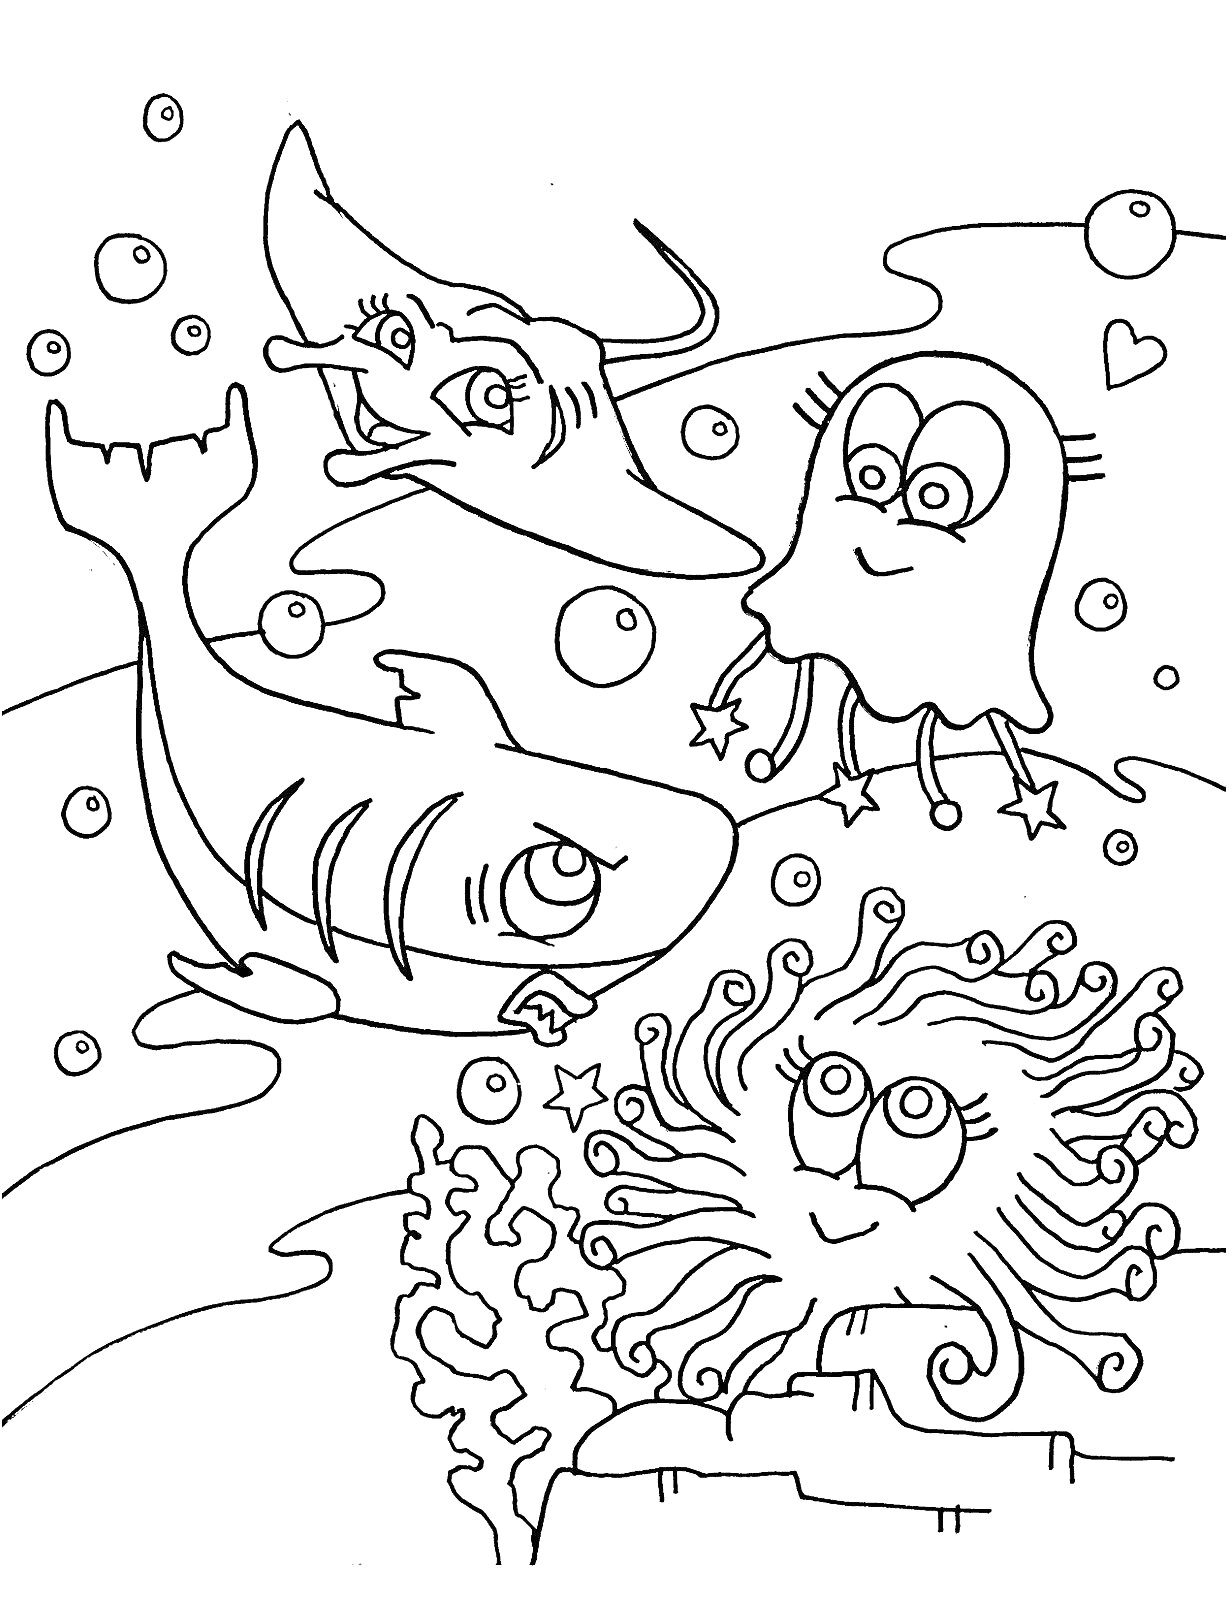 Раскраска Морские обитатели - рыба, скат, медуза и актиния